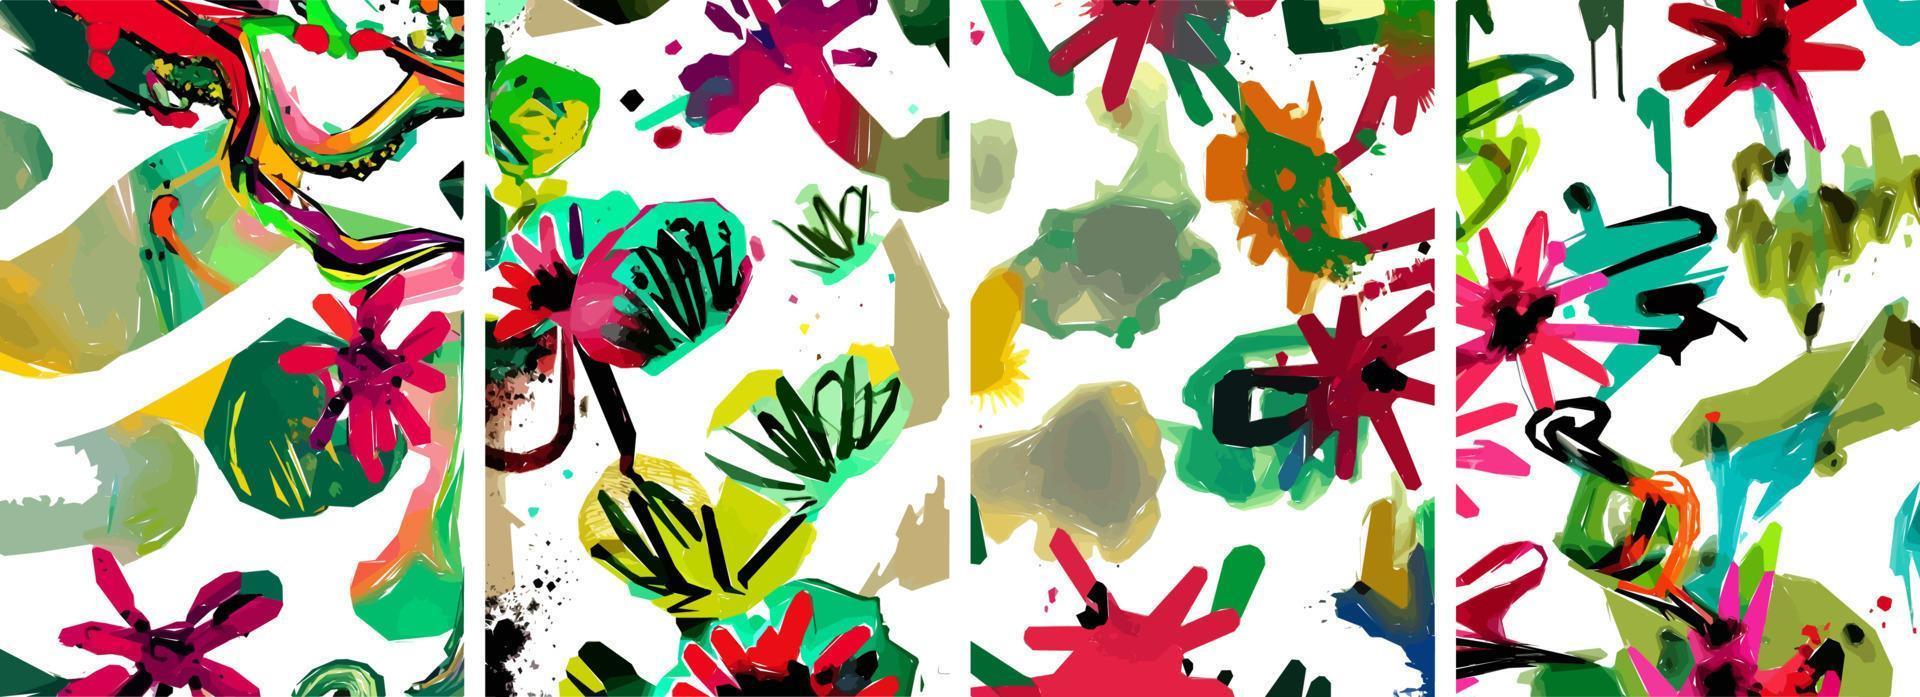 ensemble de fond de nature abstraite dessinés à la main. doodle d'encre aquarelle colorée de vecteur feuilles tropicales fleurs, éclaboussures et formes, arrière-plan pour papier, couverture, tissu, décoration intérieure.